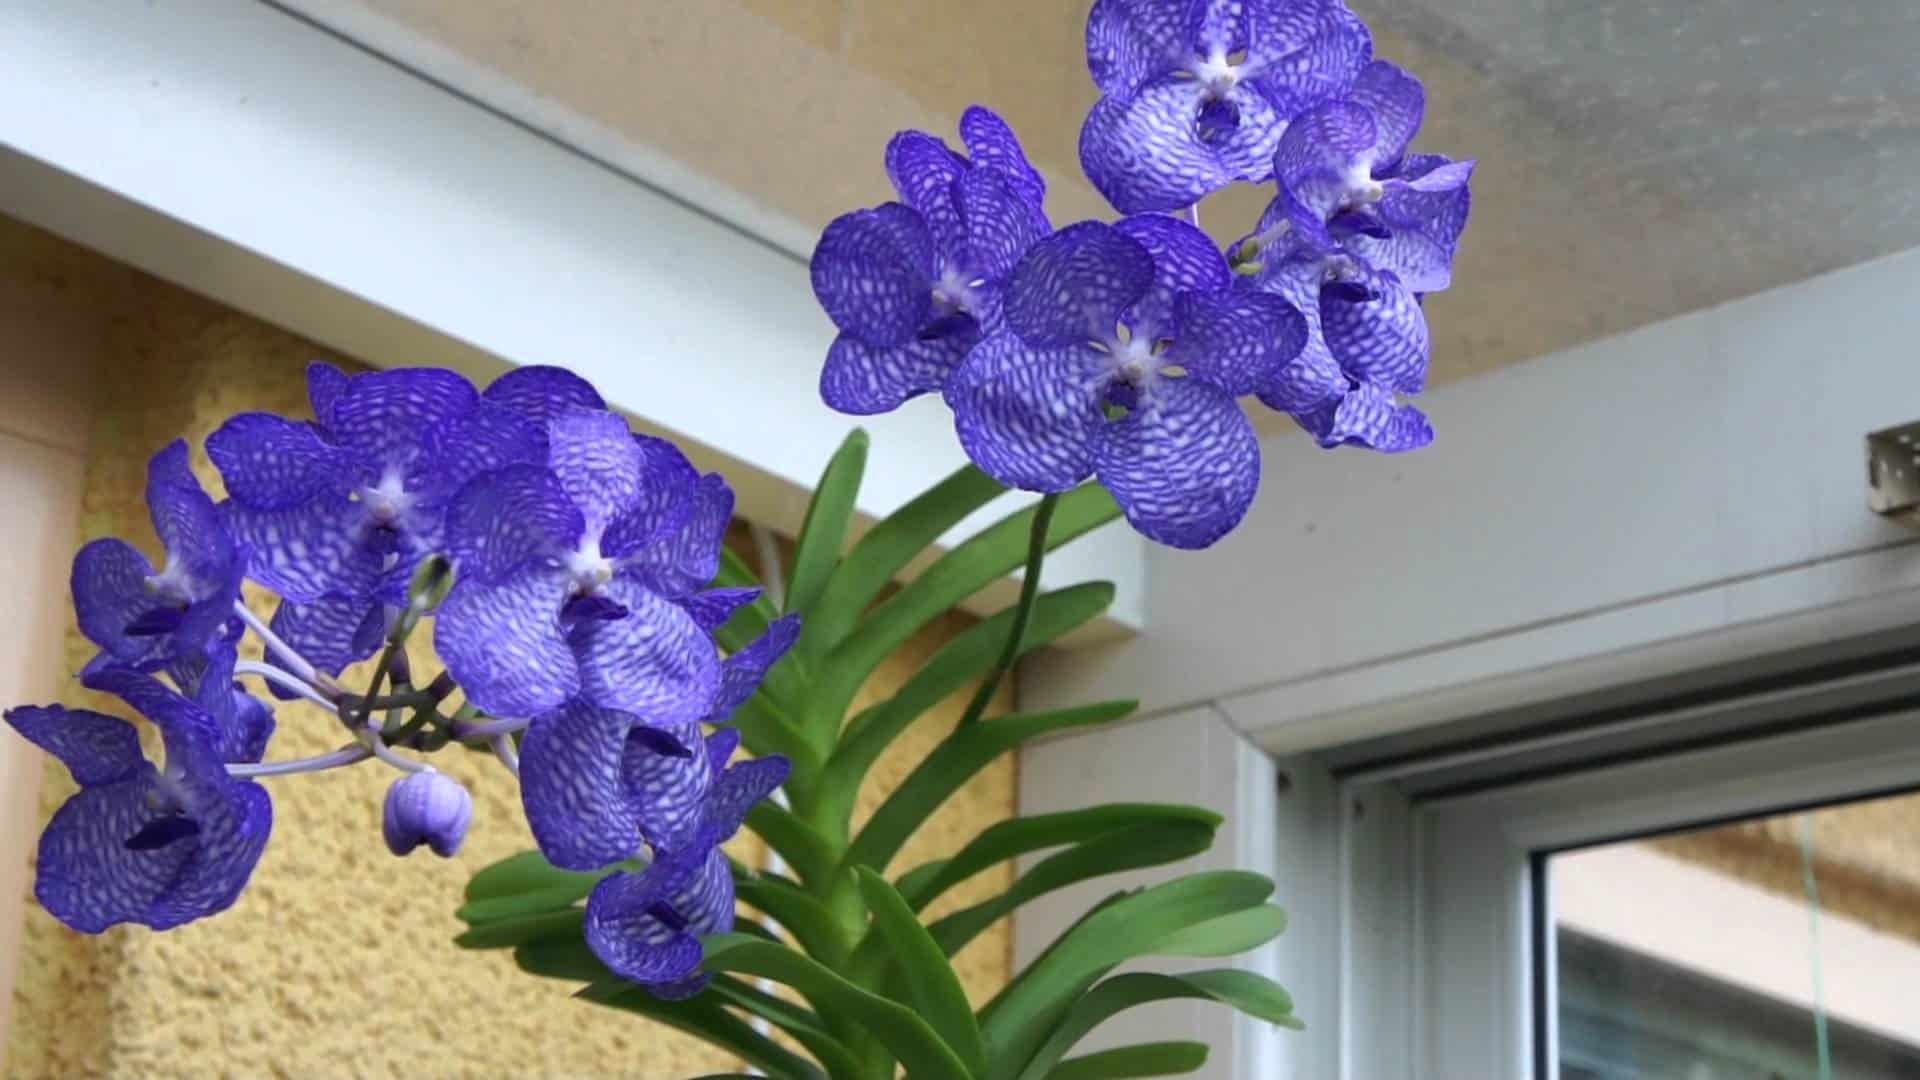 Orquídea Vanda coerulea, a orqúidea azul.